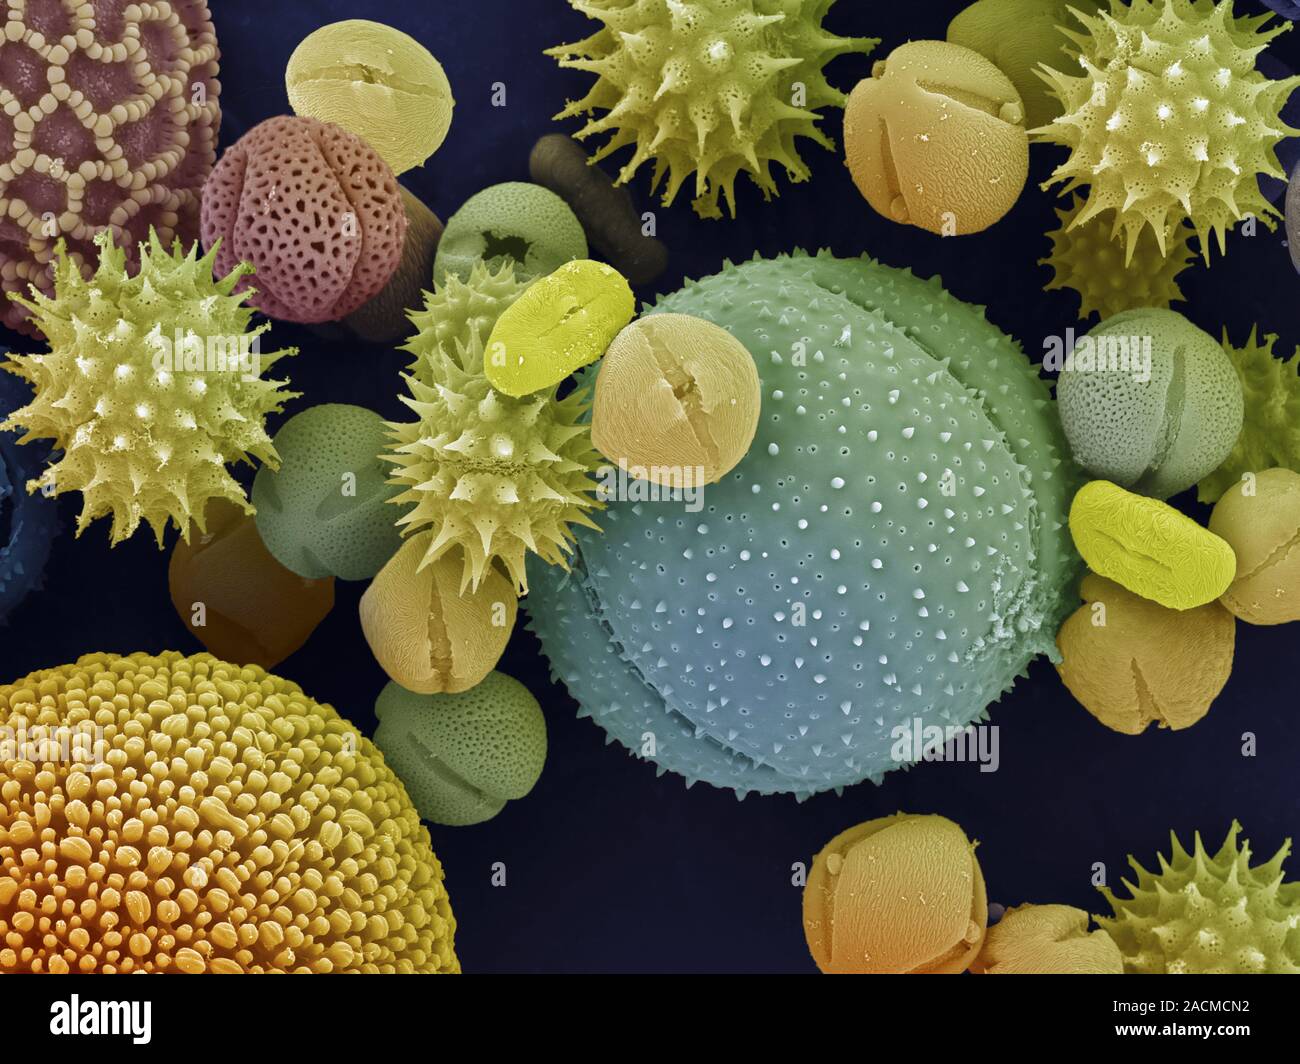 Пыльца сайт. Пыльцевые зерна под микроскопом. Пыльца цветковых растений под микроскопом. Пыльца покрытосеменных под микроскопом. Пыльца микроскопия палинология.